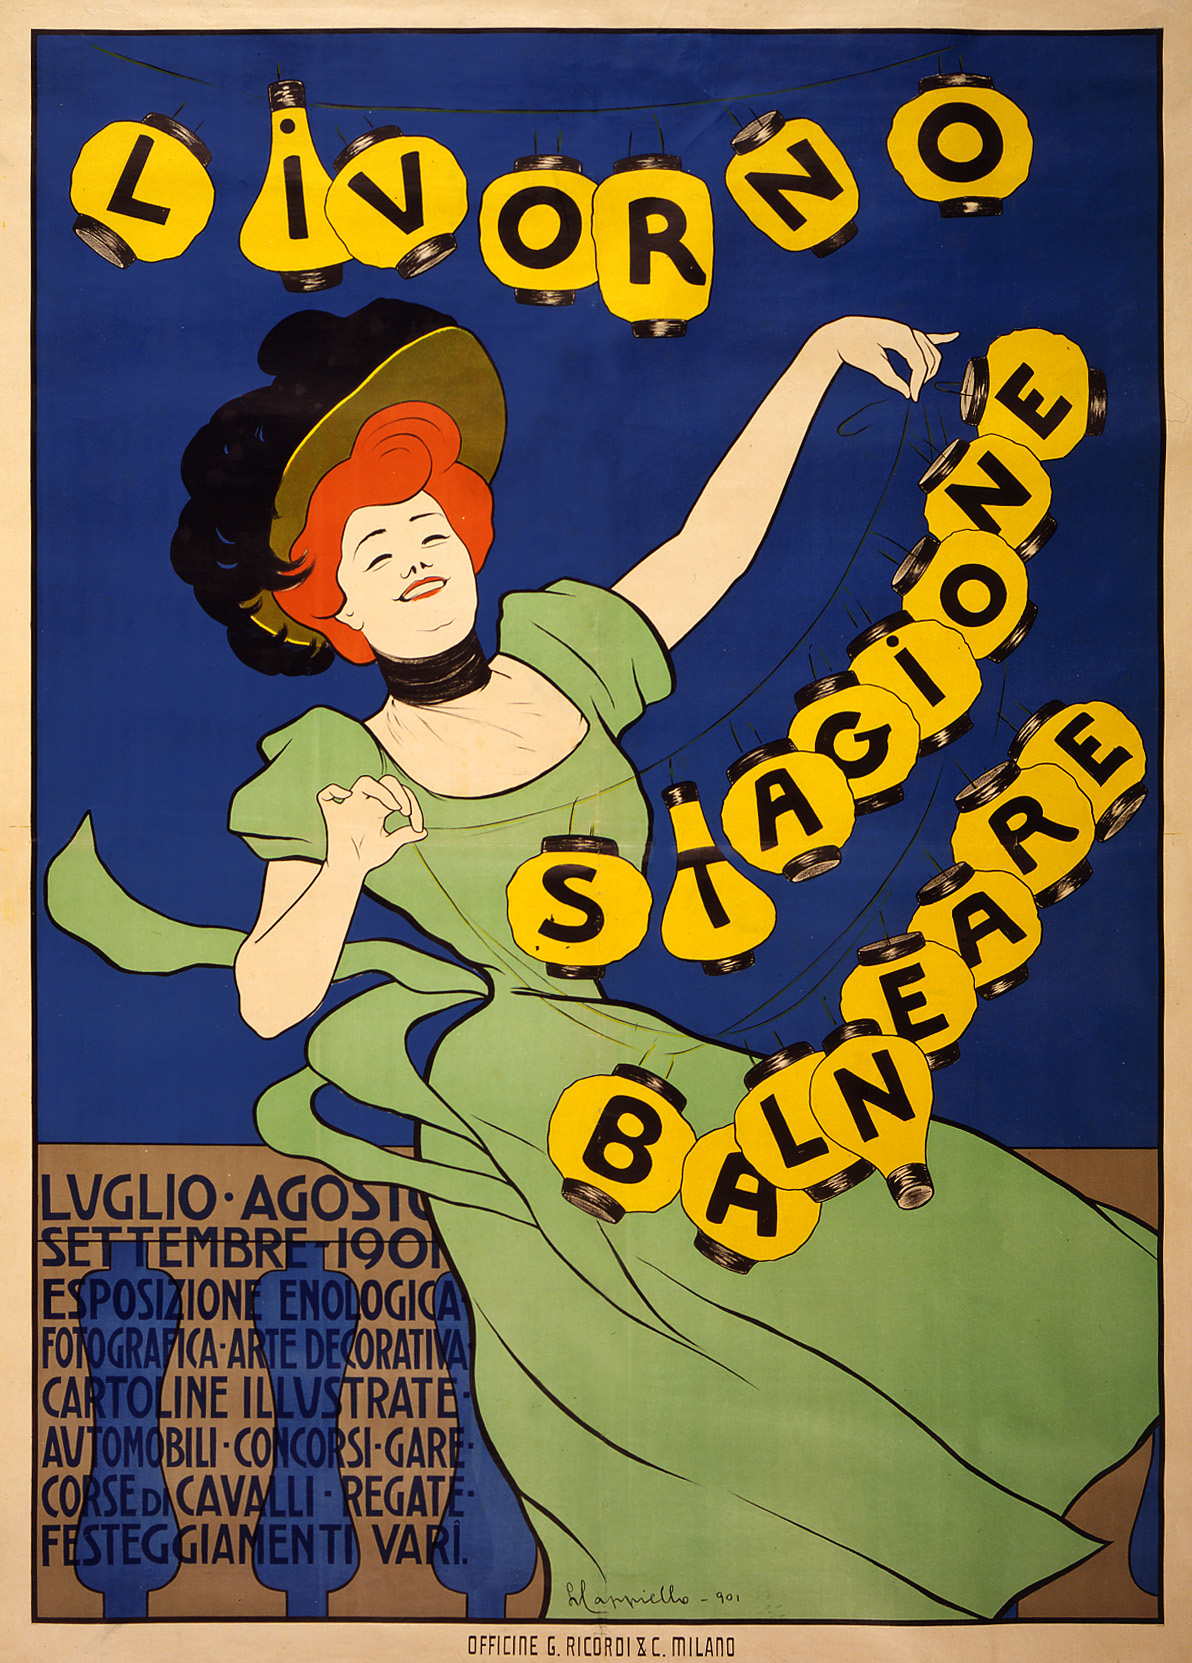 Livorno_stagione_balneare%2C_poster_by_Leonetto_Cappiello%2C_1901.jpg